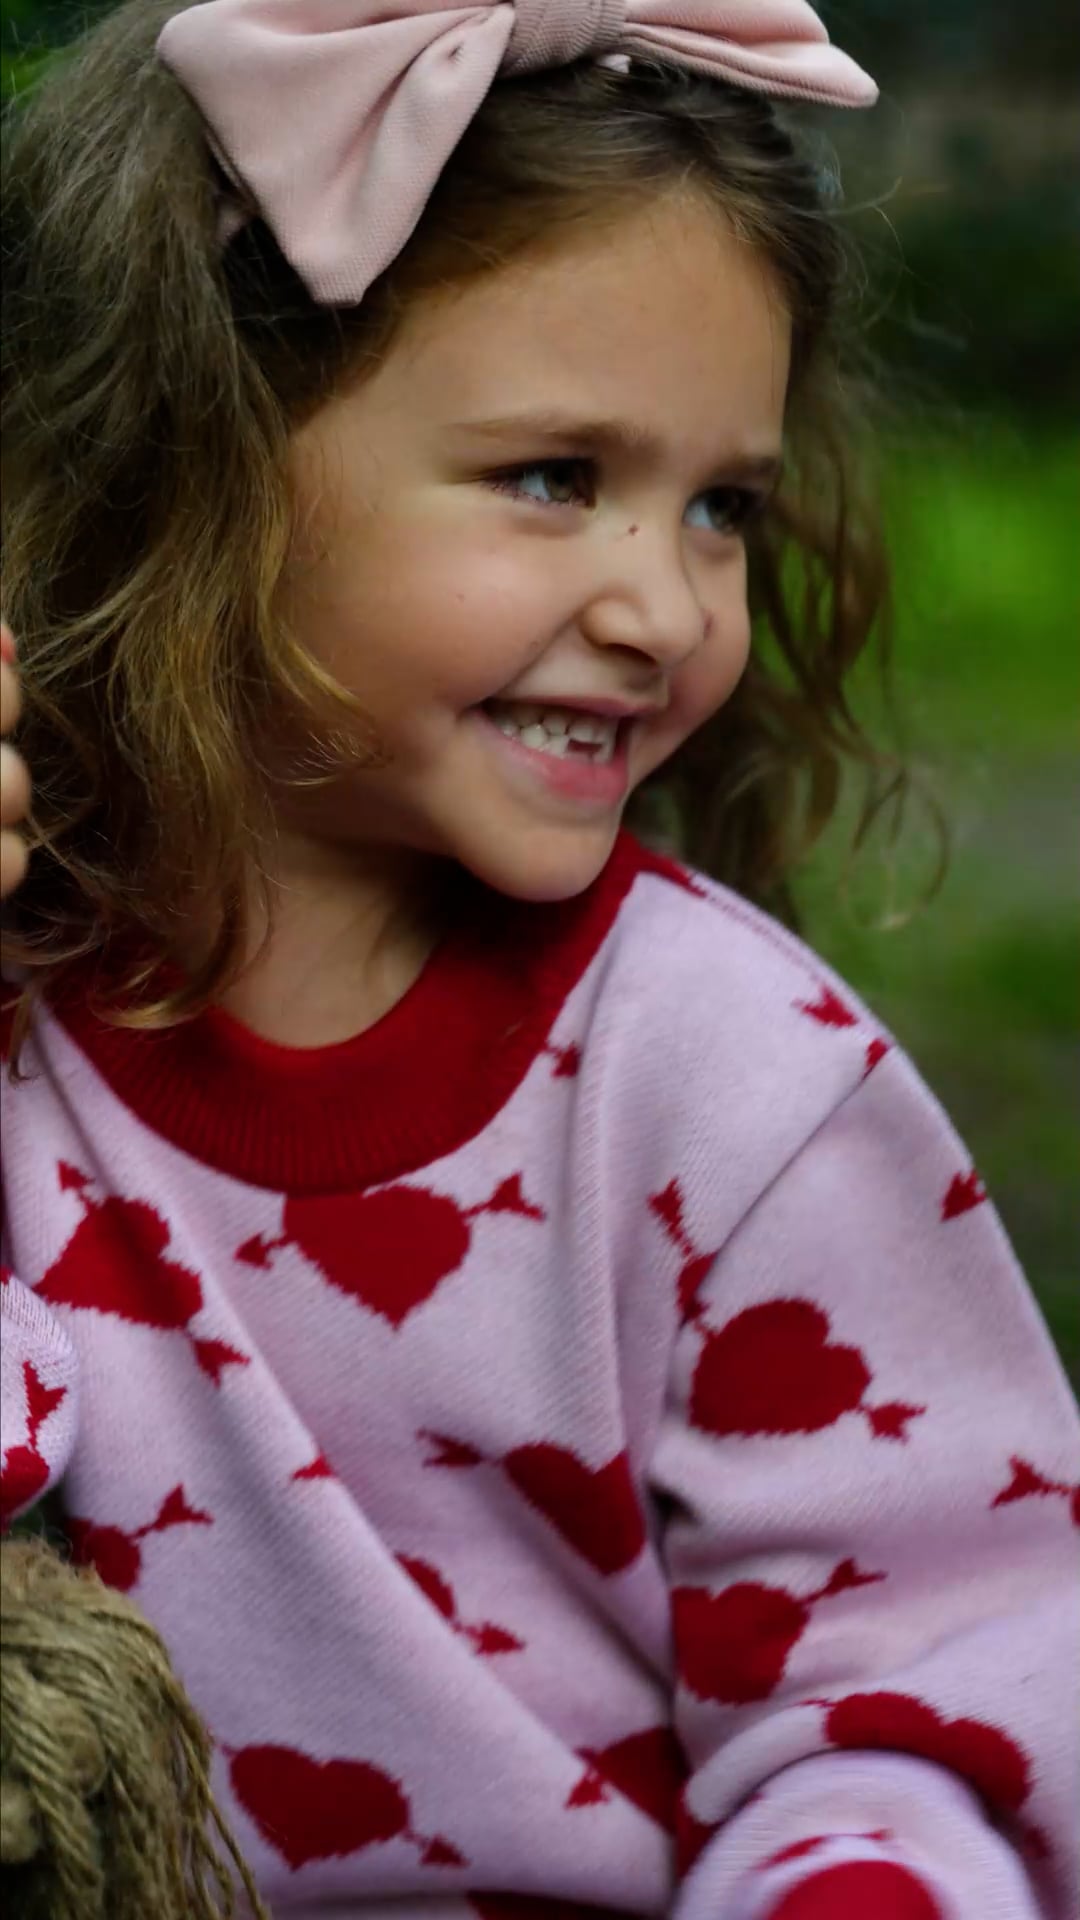 KID STORY Merino Merino inimă dulce pentru copii pulover pentru copii